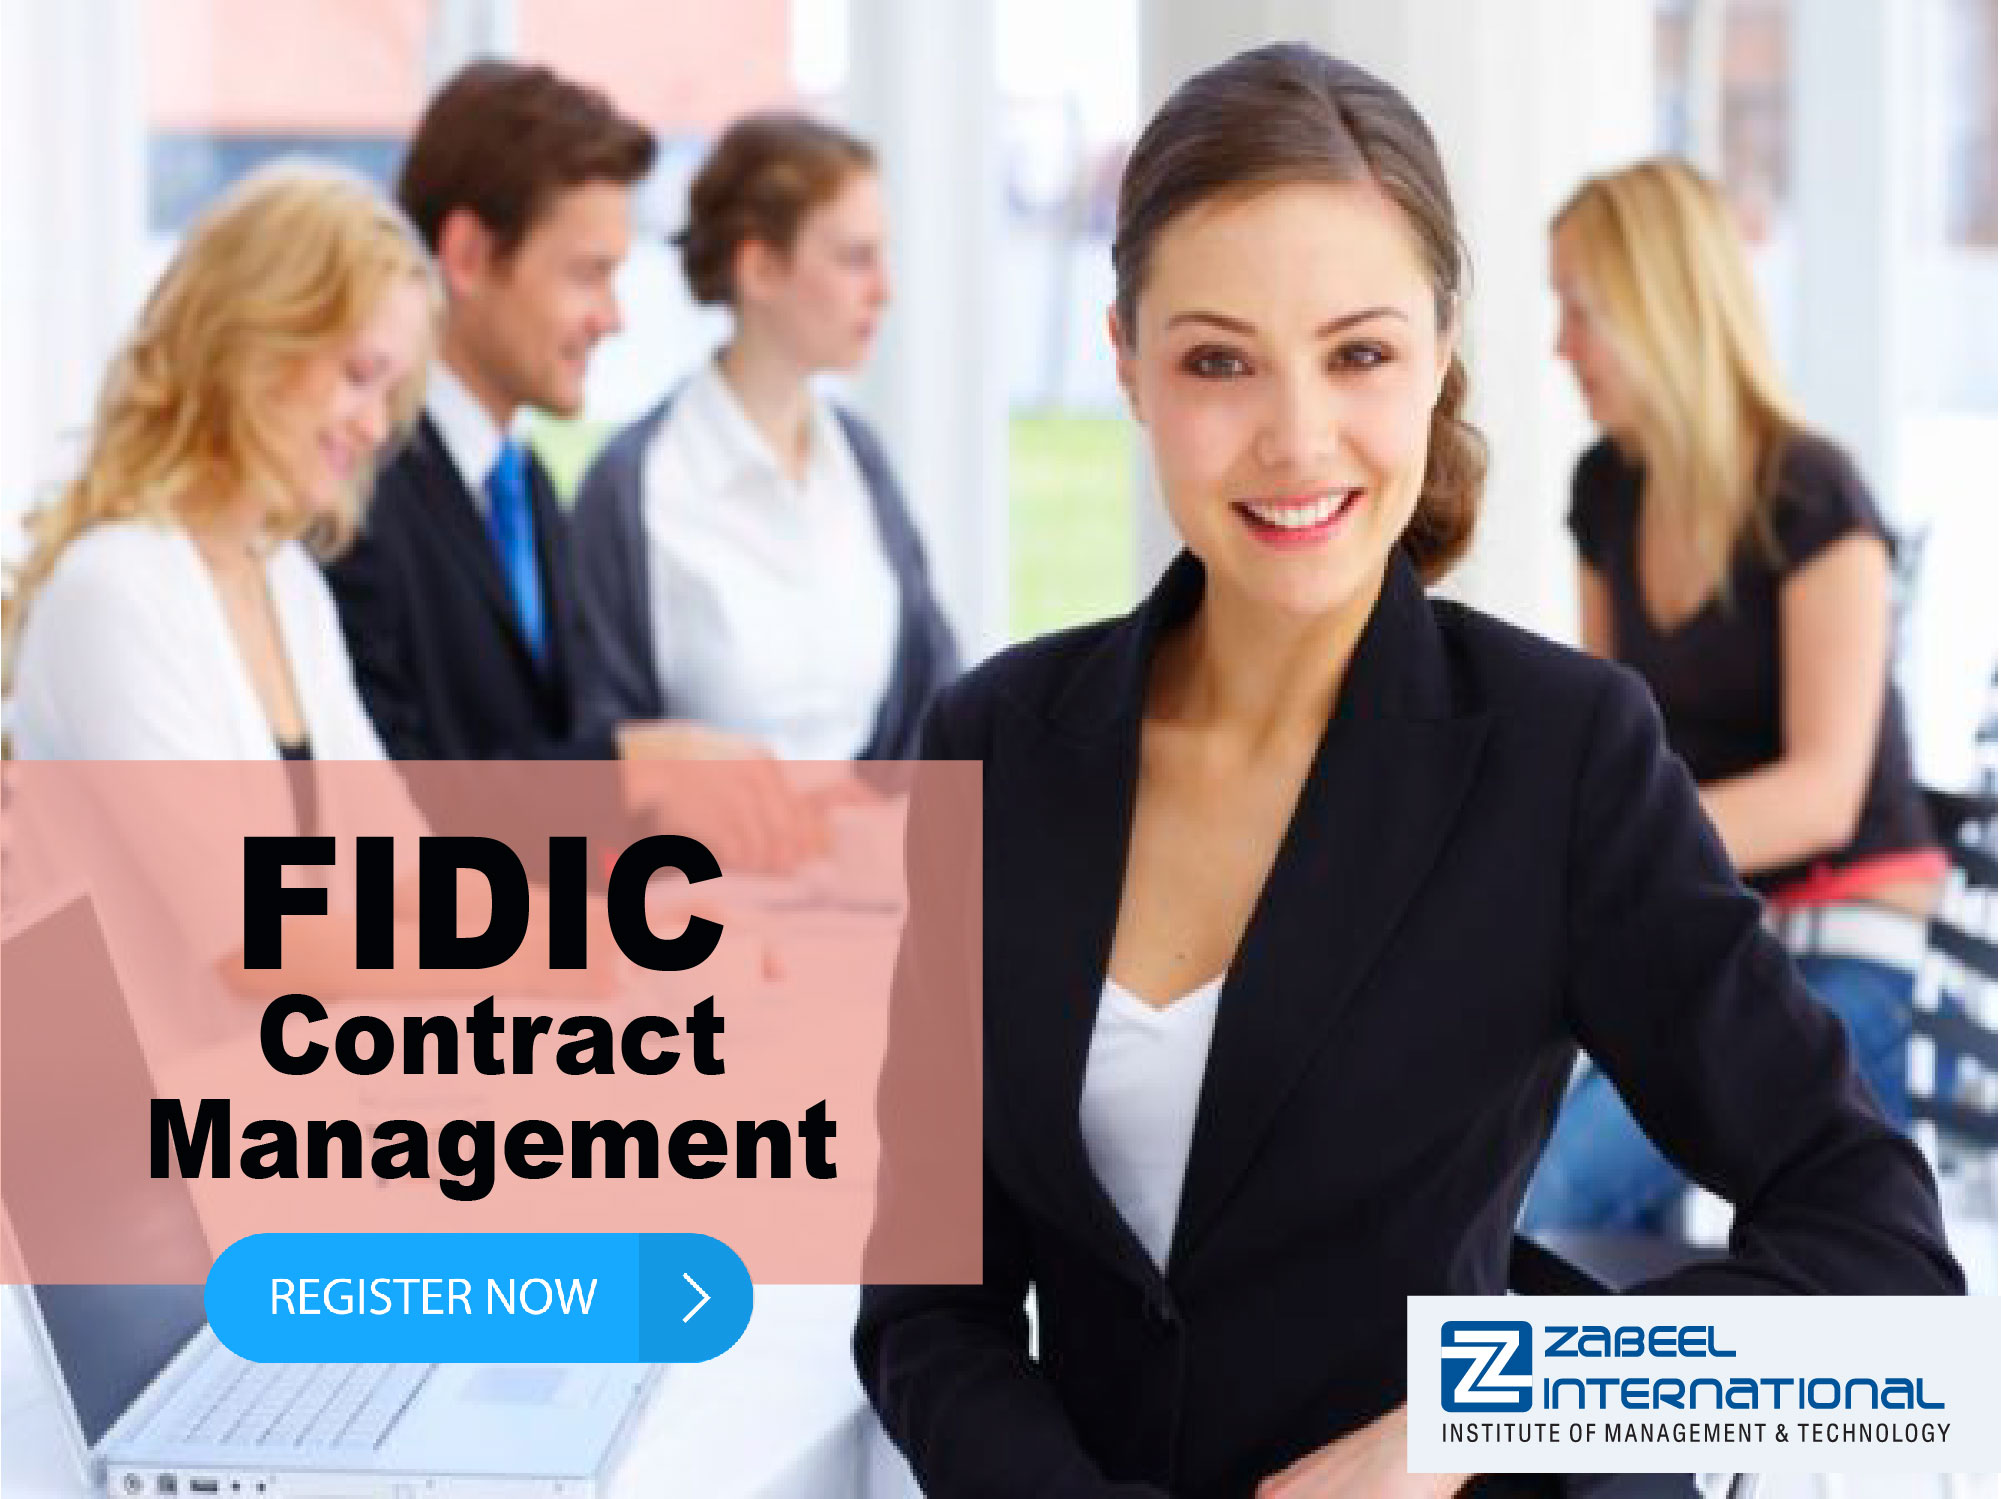 FIDIC Contracts Management Training Course, Dubai, United Arab Emirates